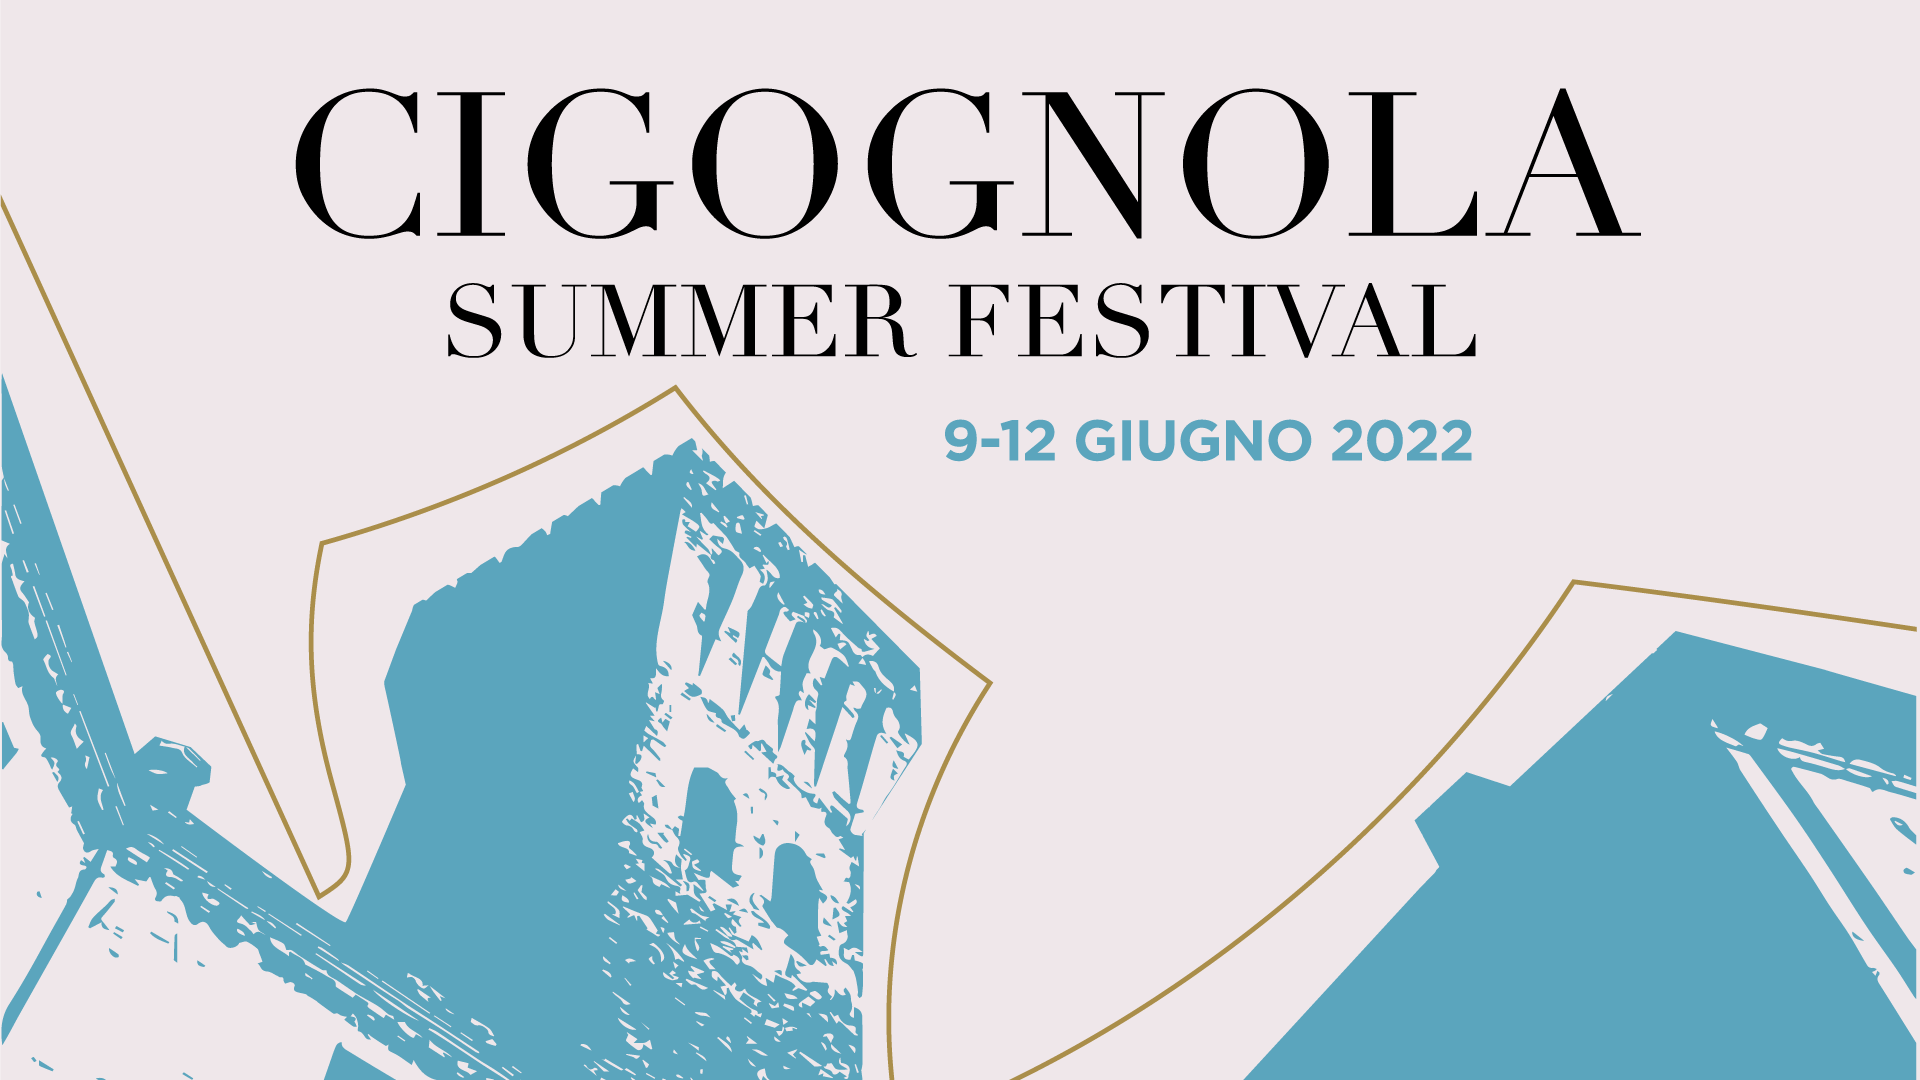 Torna il Cigognola Summer Festival – Dal 9 al 12 Giugno